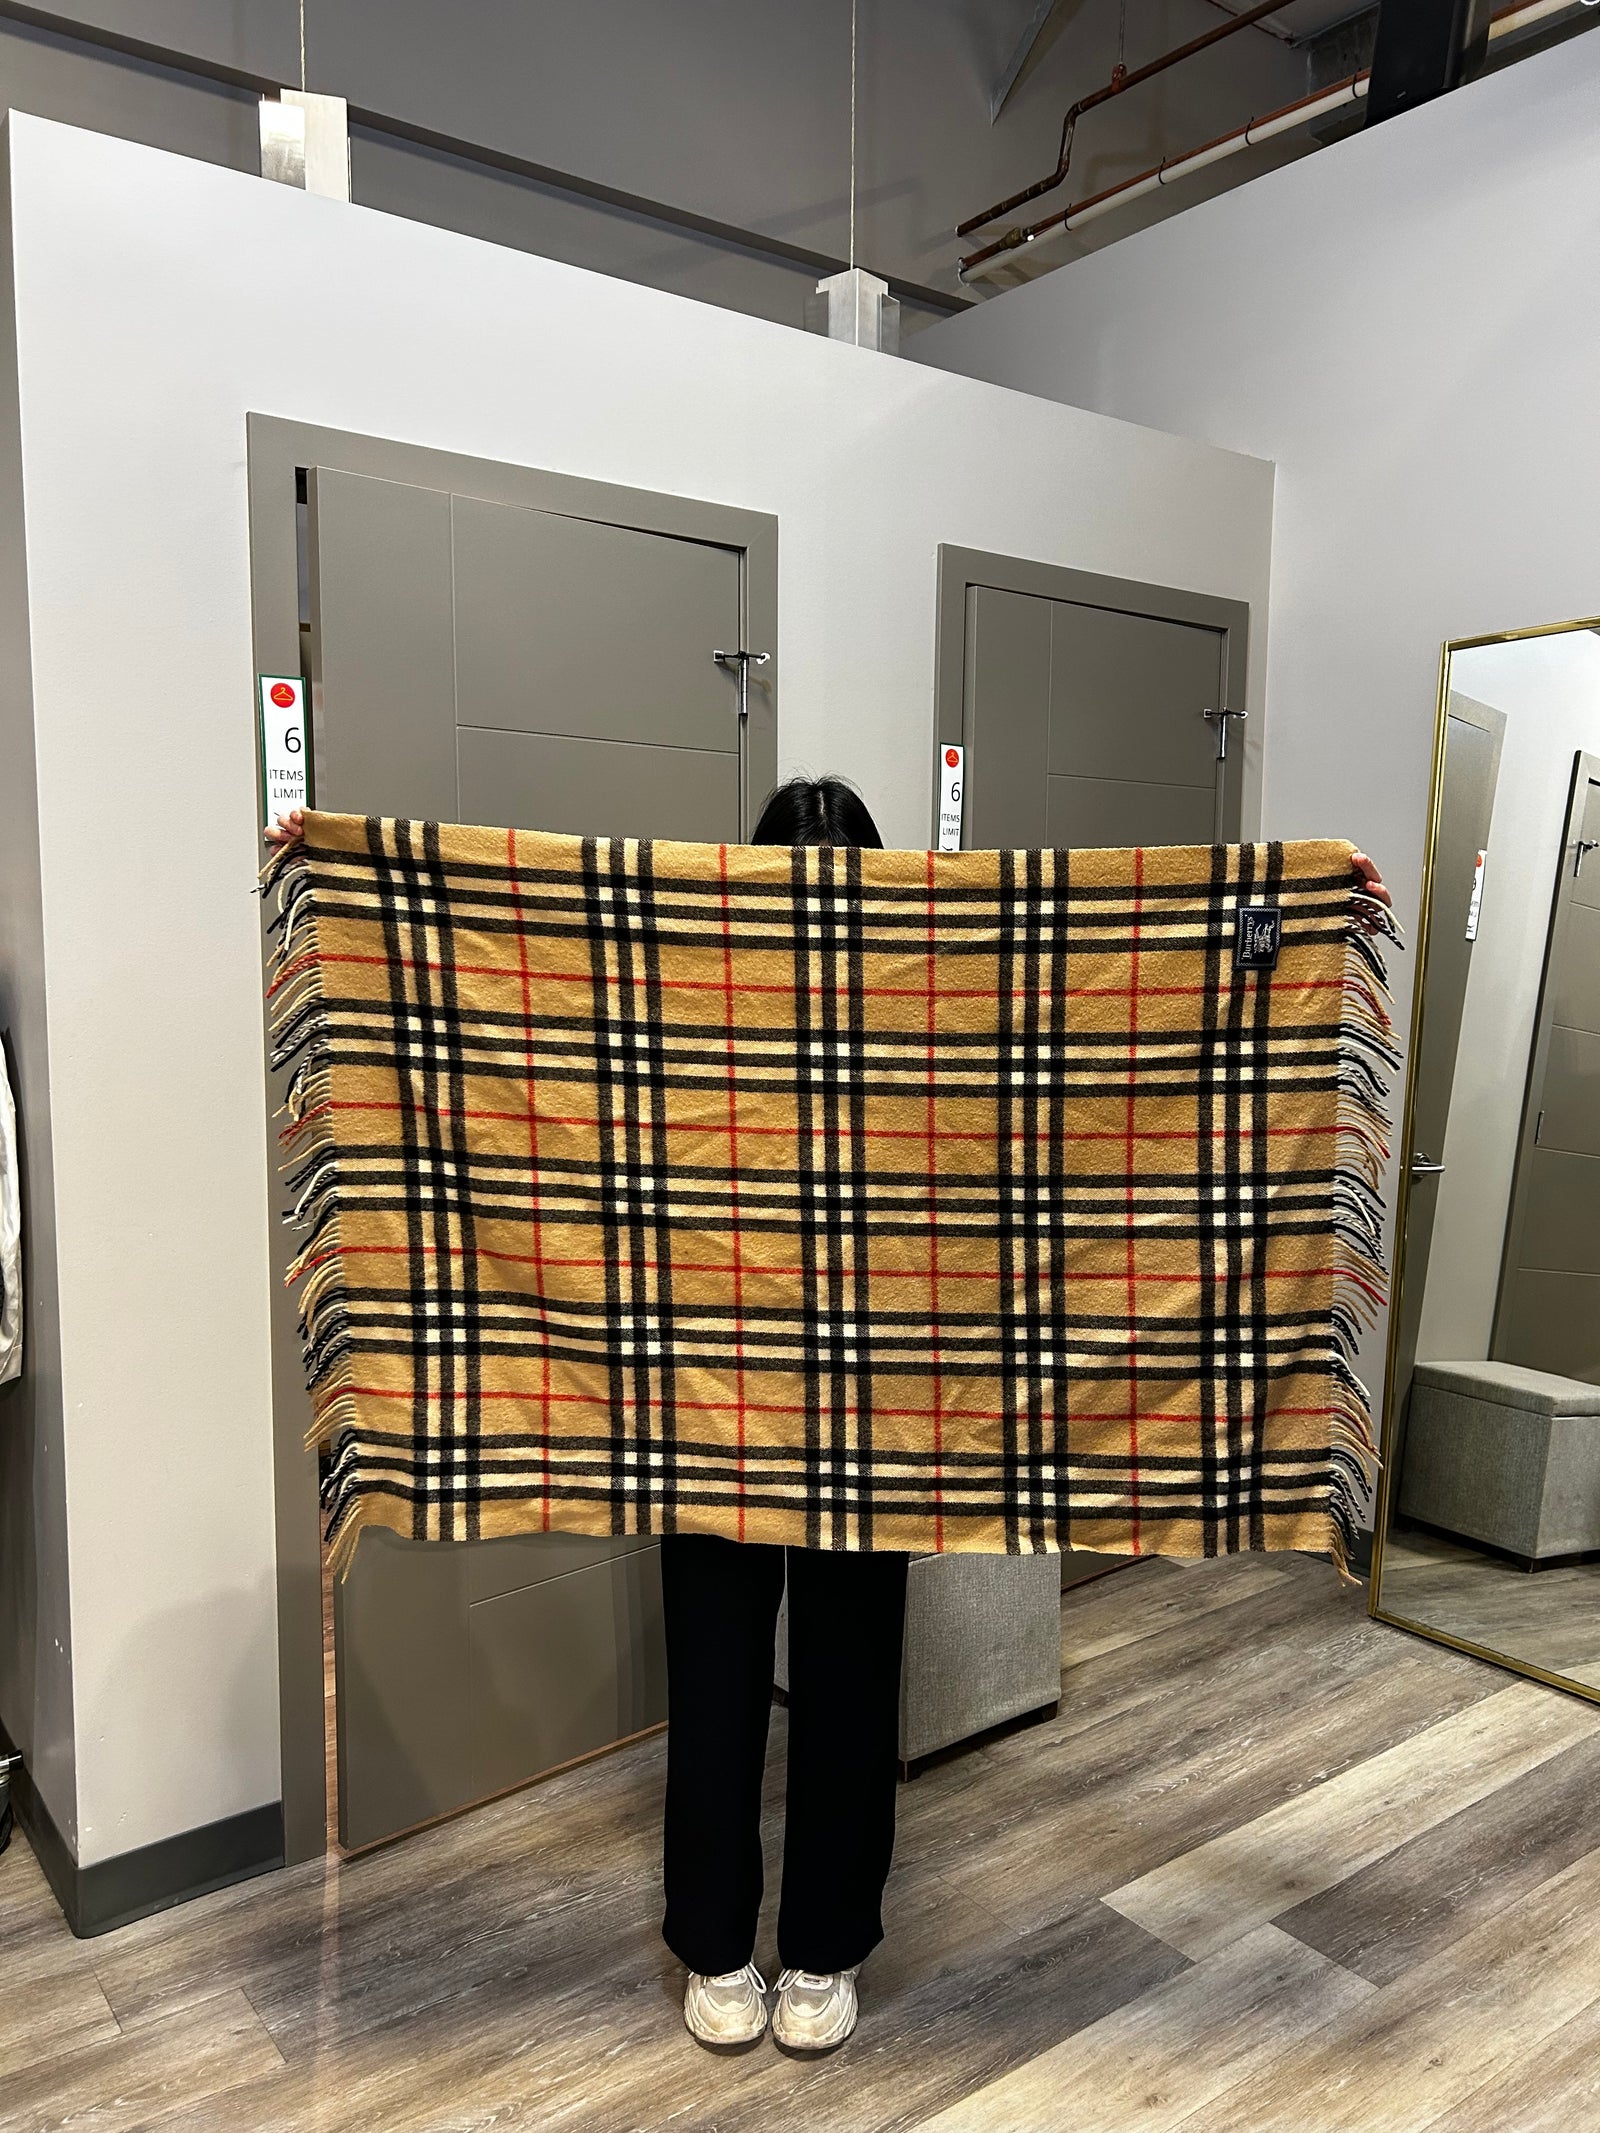 Wool Nova Check Lap Blanket/Wrap 25x41